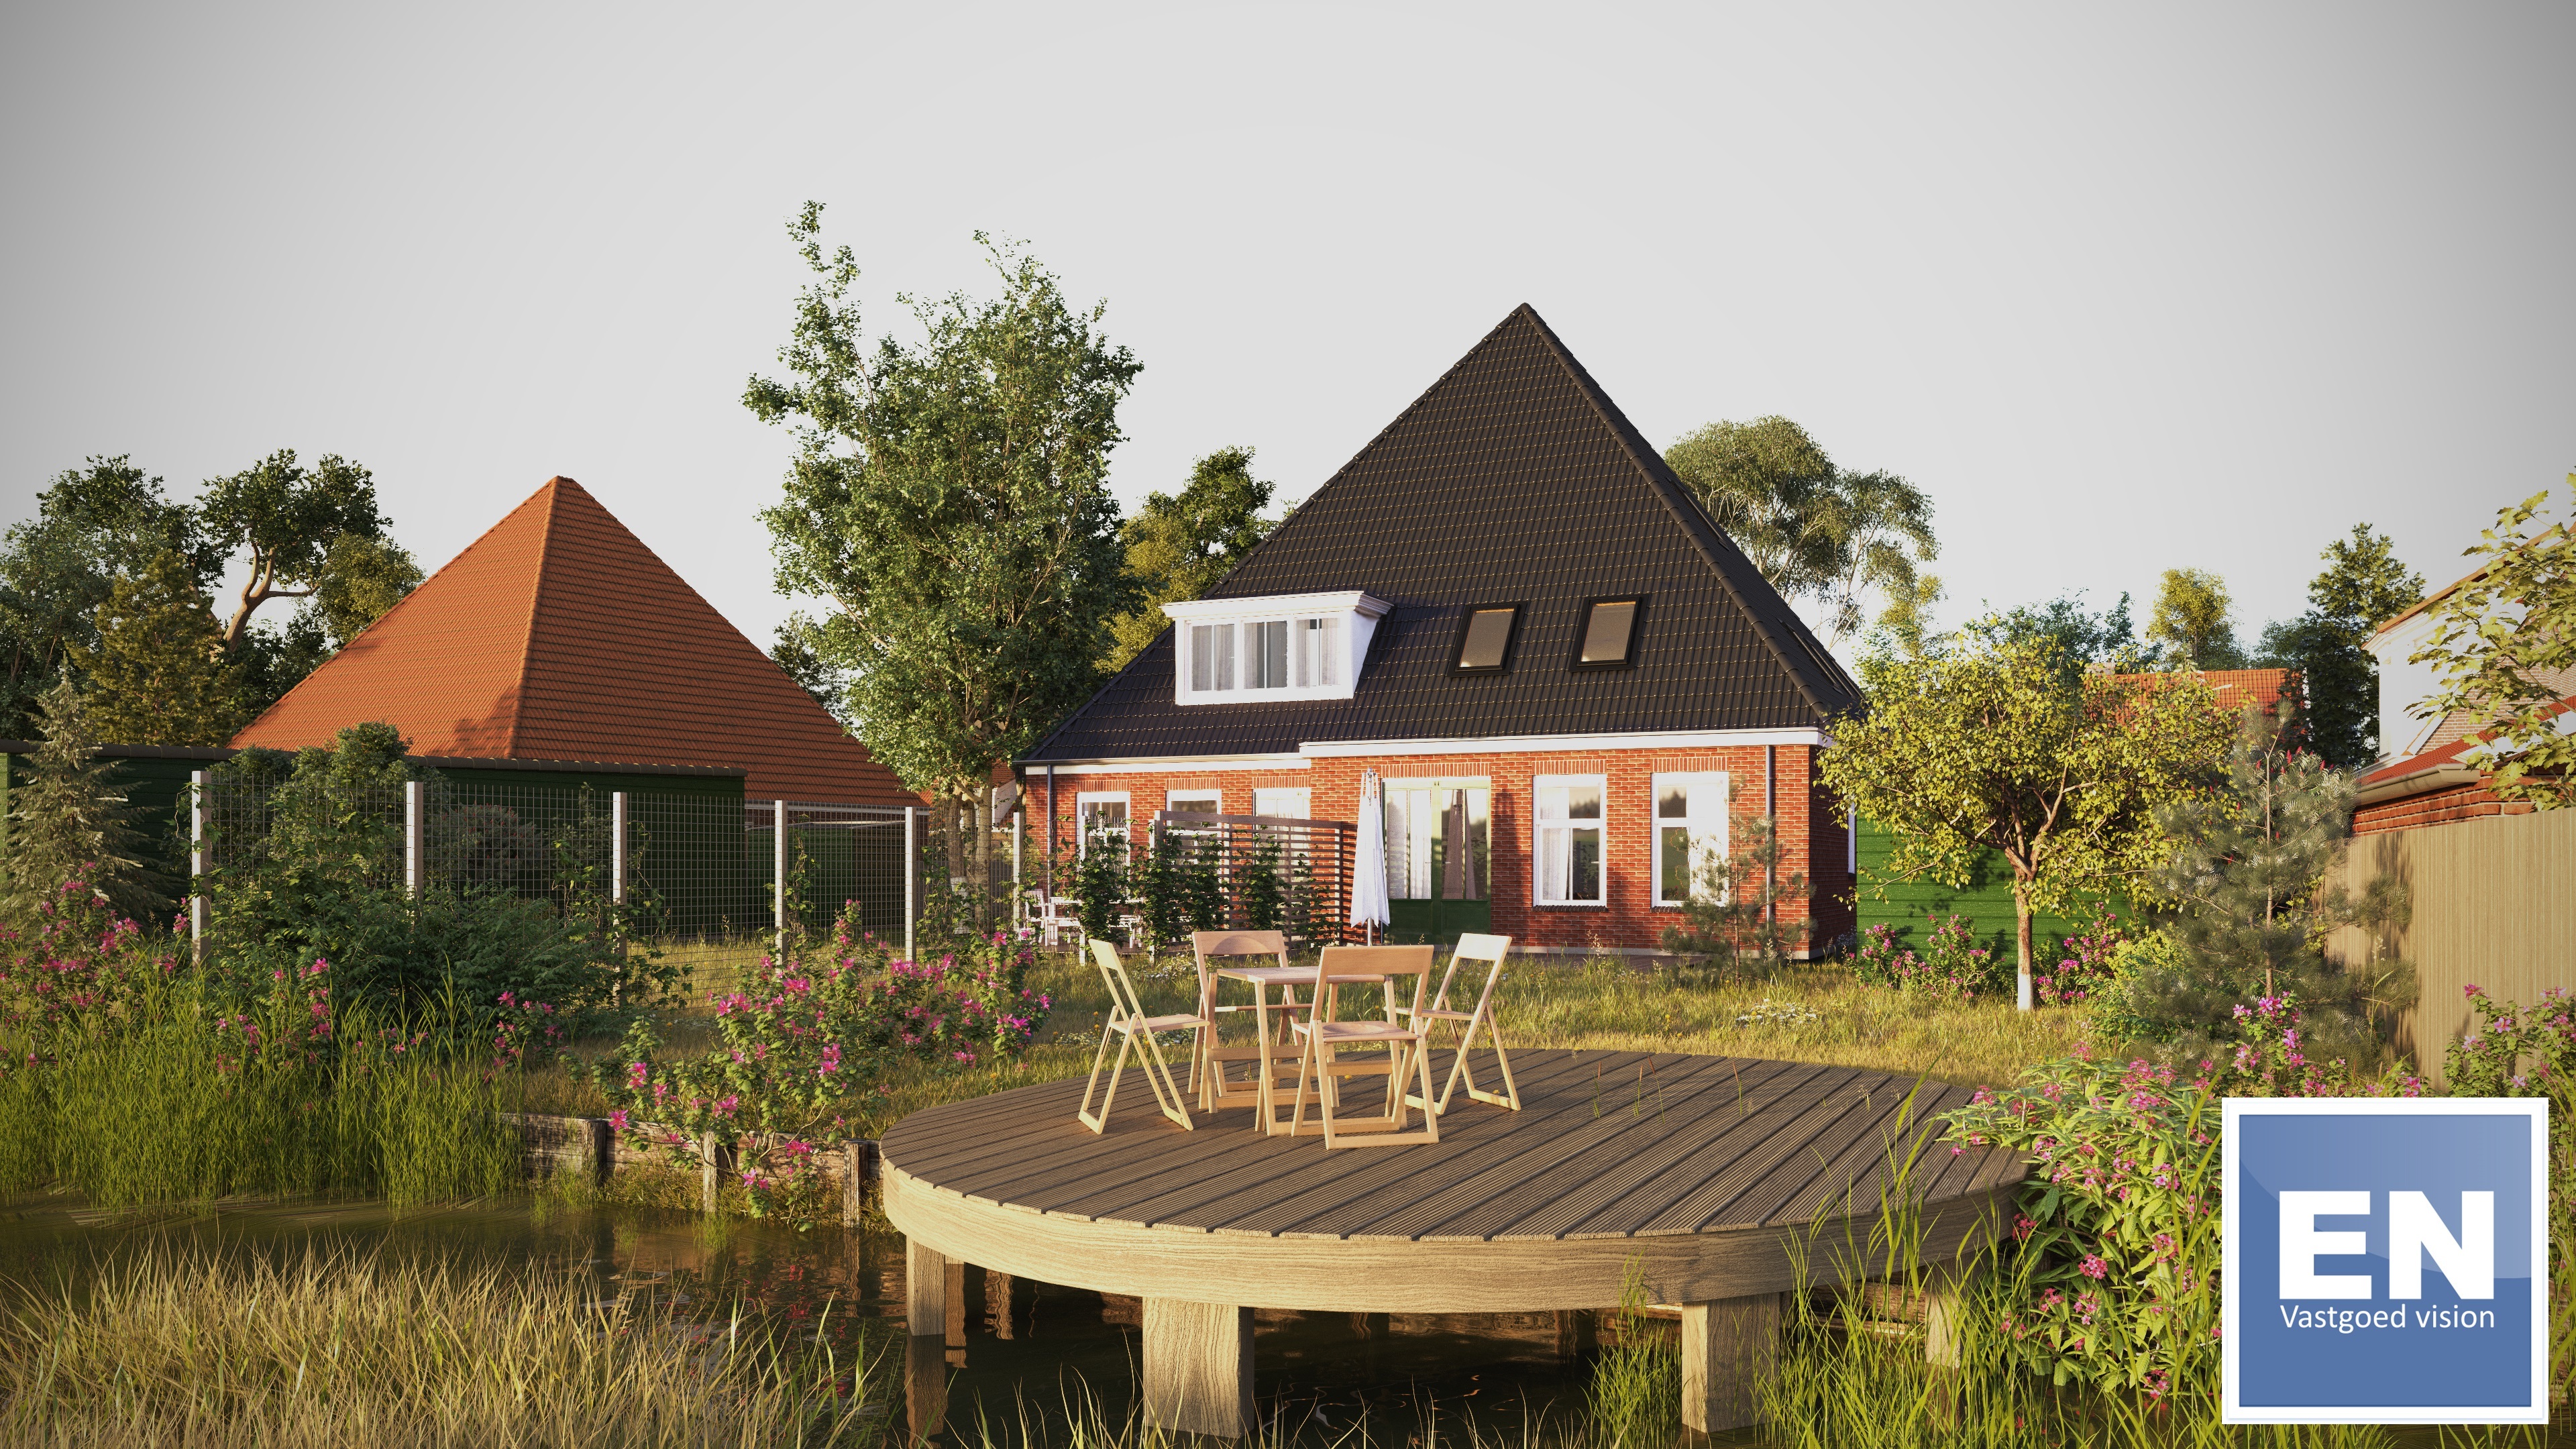 EN Vastgoed - HD exterieur Artist Impression tuin met woonhuis.jpg